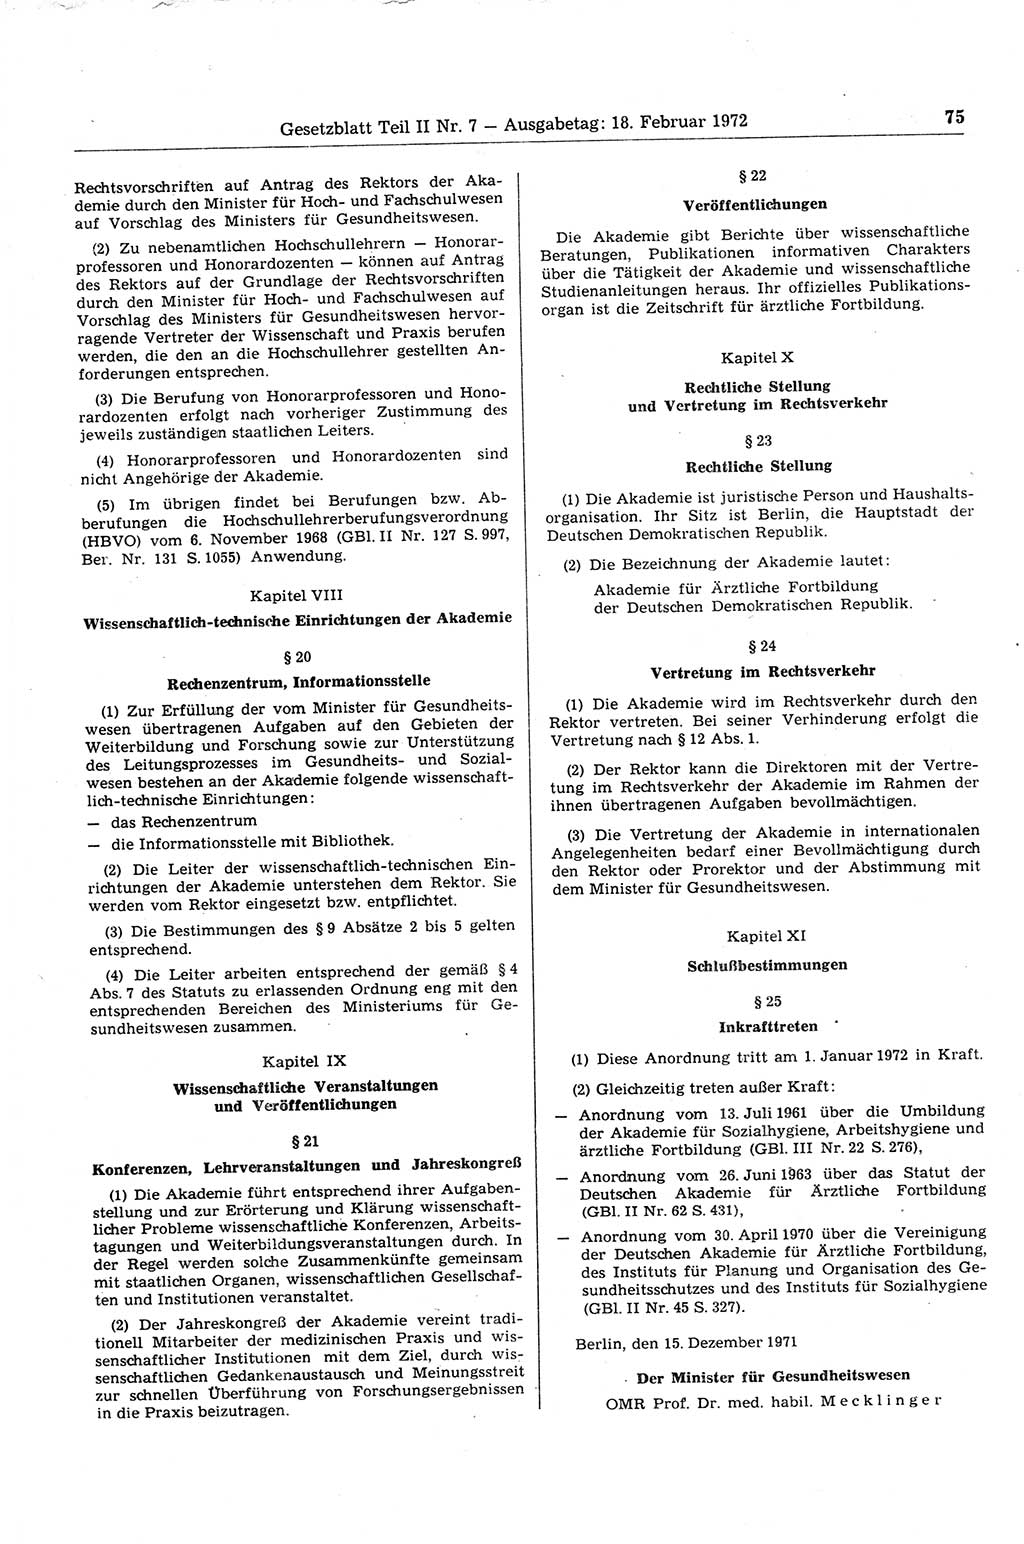 Gesetzblatt (GBl.) der Deutschen Demokratischen Republik (DDR) Teil ⅠⅠ 1972, Seite 75 (GBl. DDR ⅠⅠ 1972, S. 75)